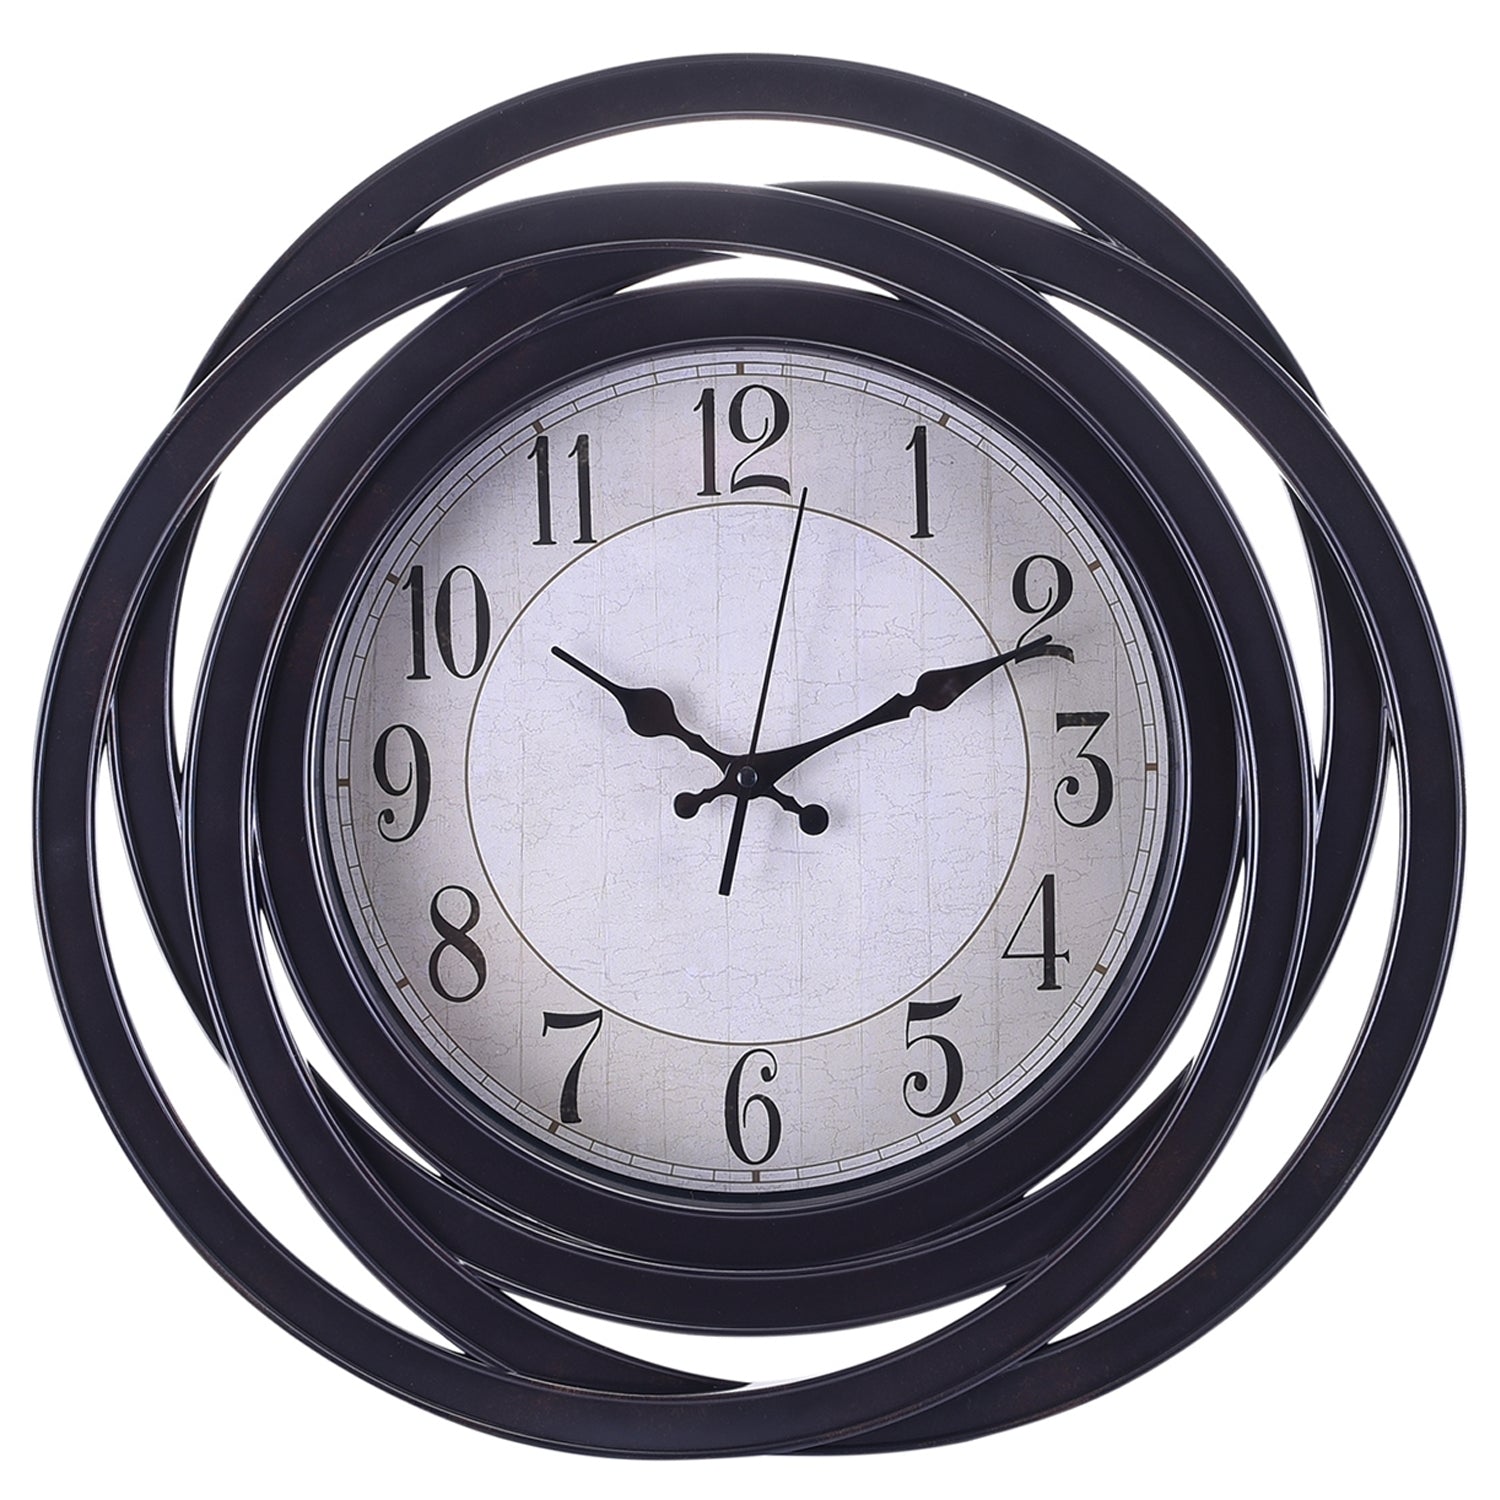 Premium Antique Design Analog Wall Clock